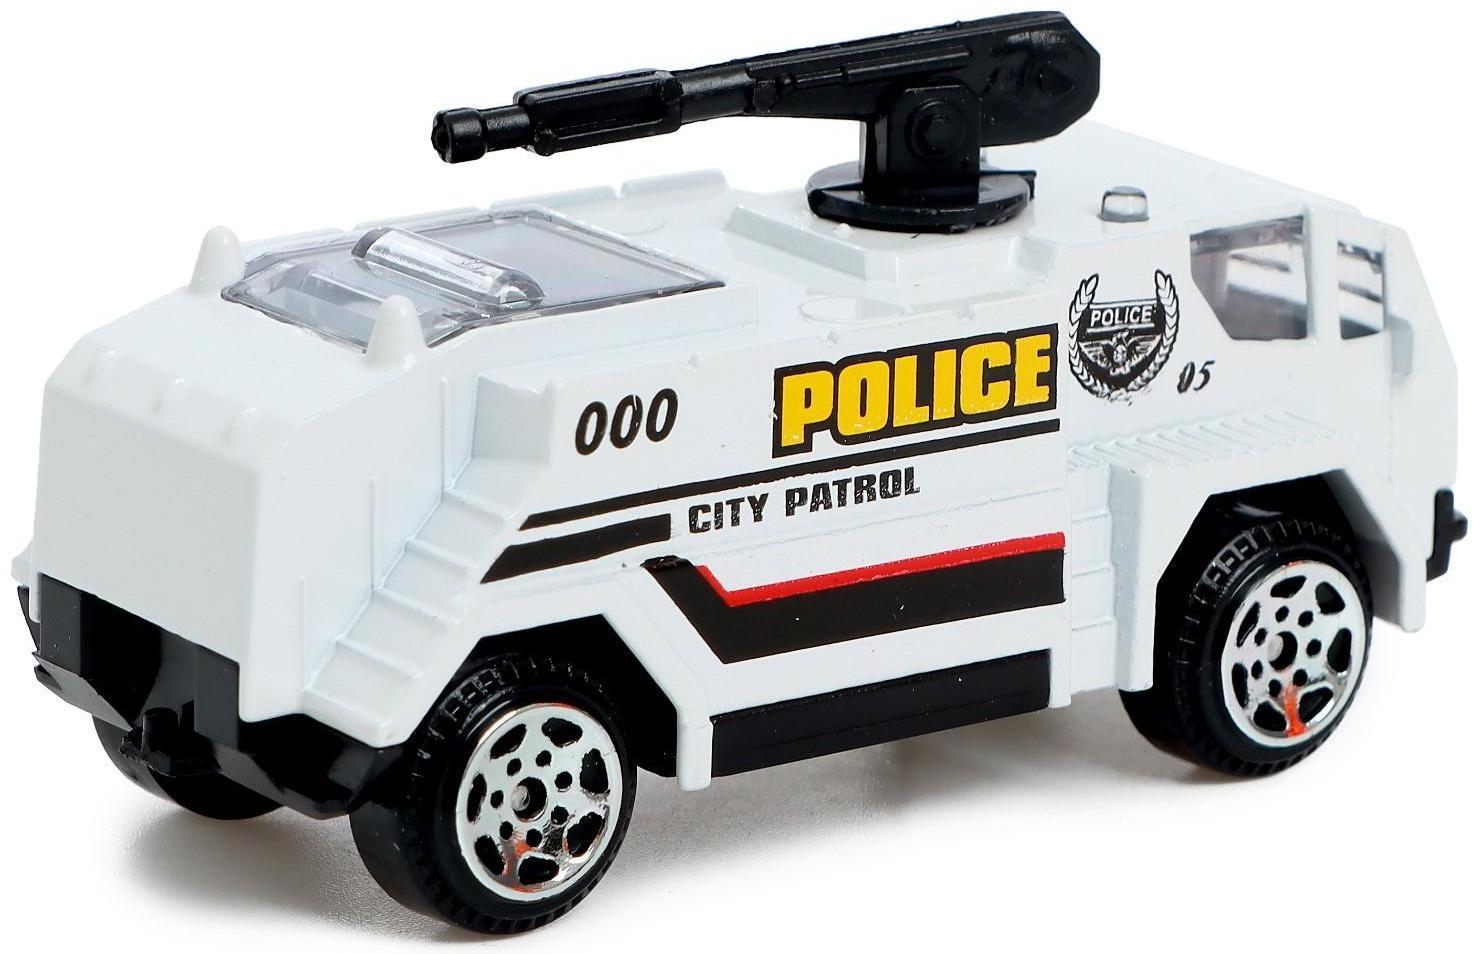 Машина металлическая «Полиция», масштаб 1:64, МИКС